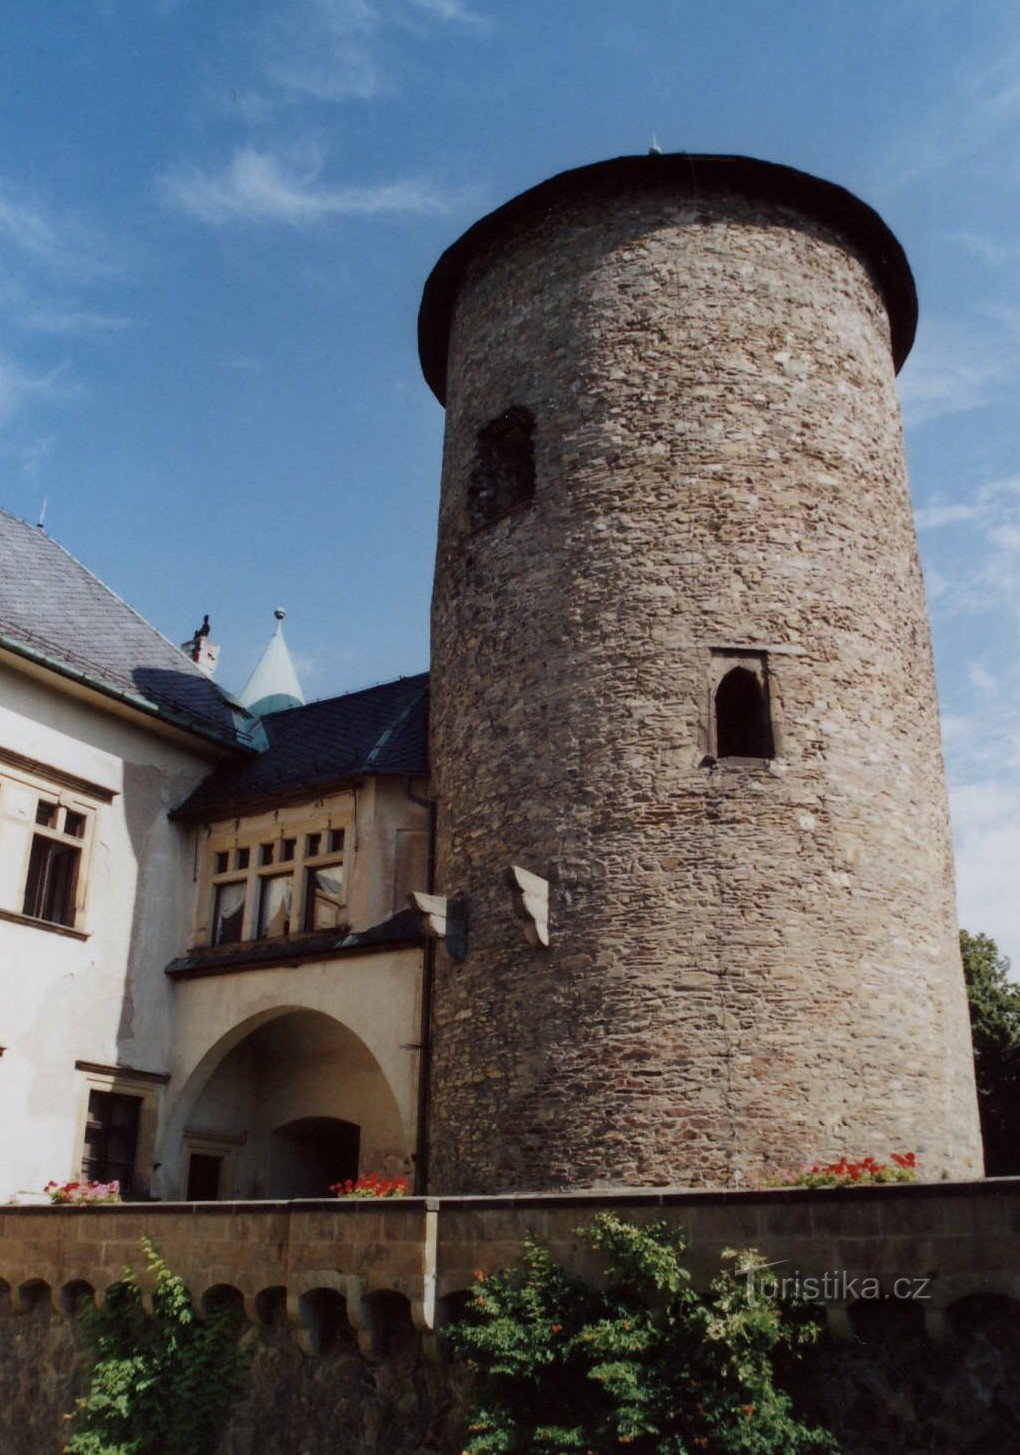 φωνή του κάστρου από τα μέσα του 13ου αιώνα.